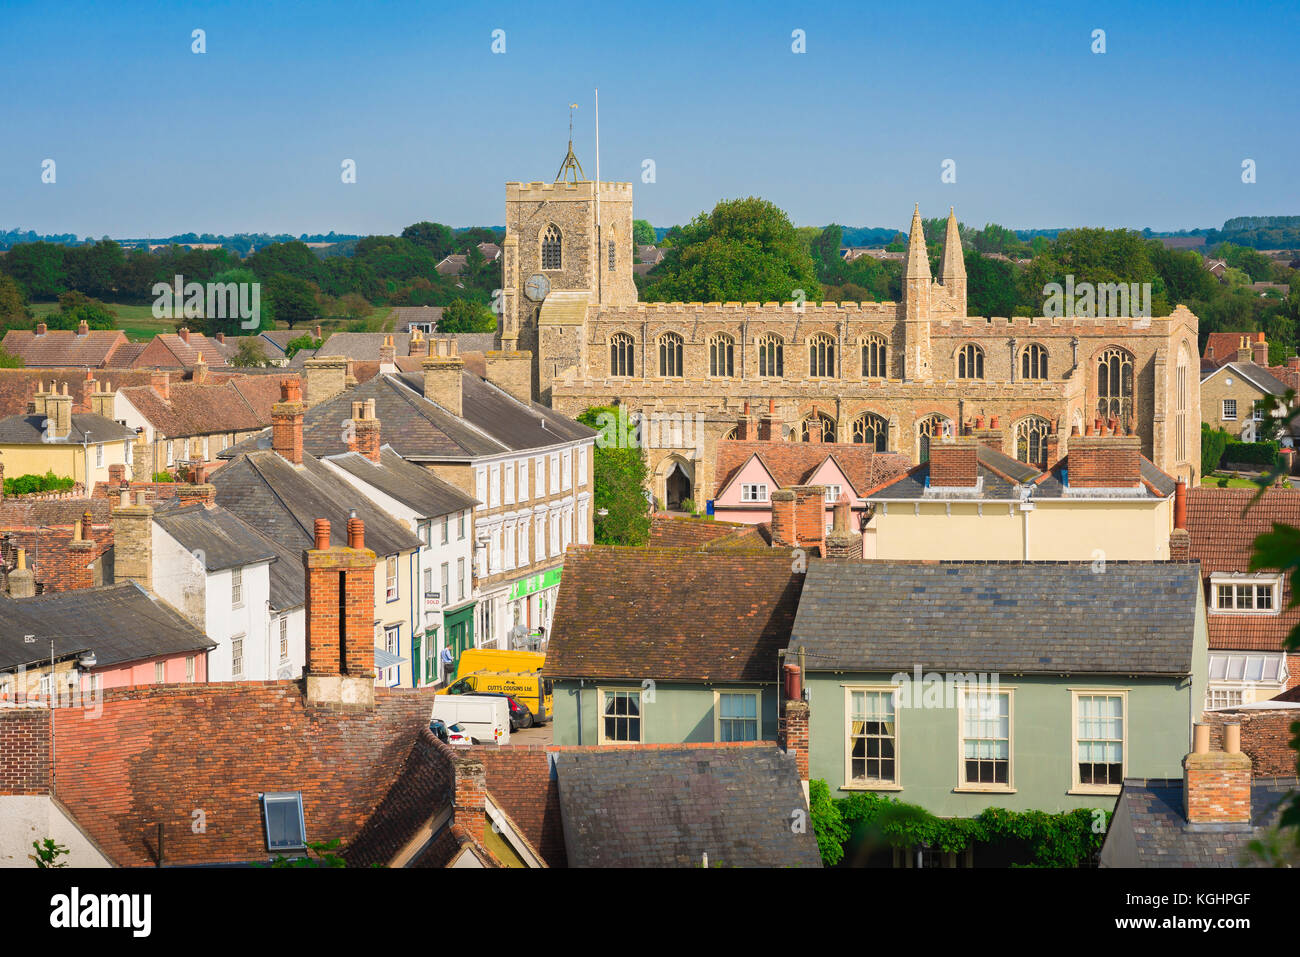 Clare Suffolk UK, Luftaufnahme des Dorfes von Clare mit seinen historischen, mittelalterlichen Kirche in Suffolk, England, Grieskirchen Bezirk, UK. Stockfoto